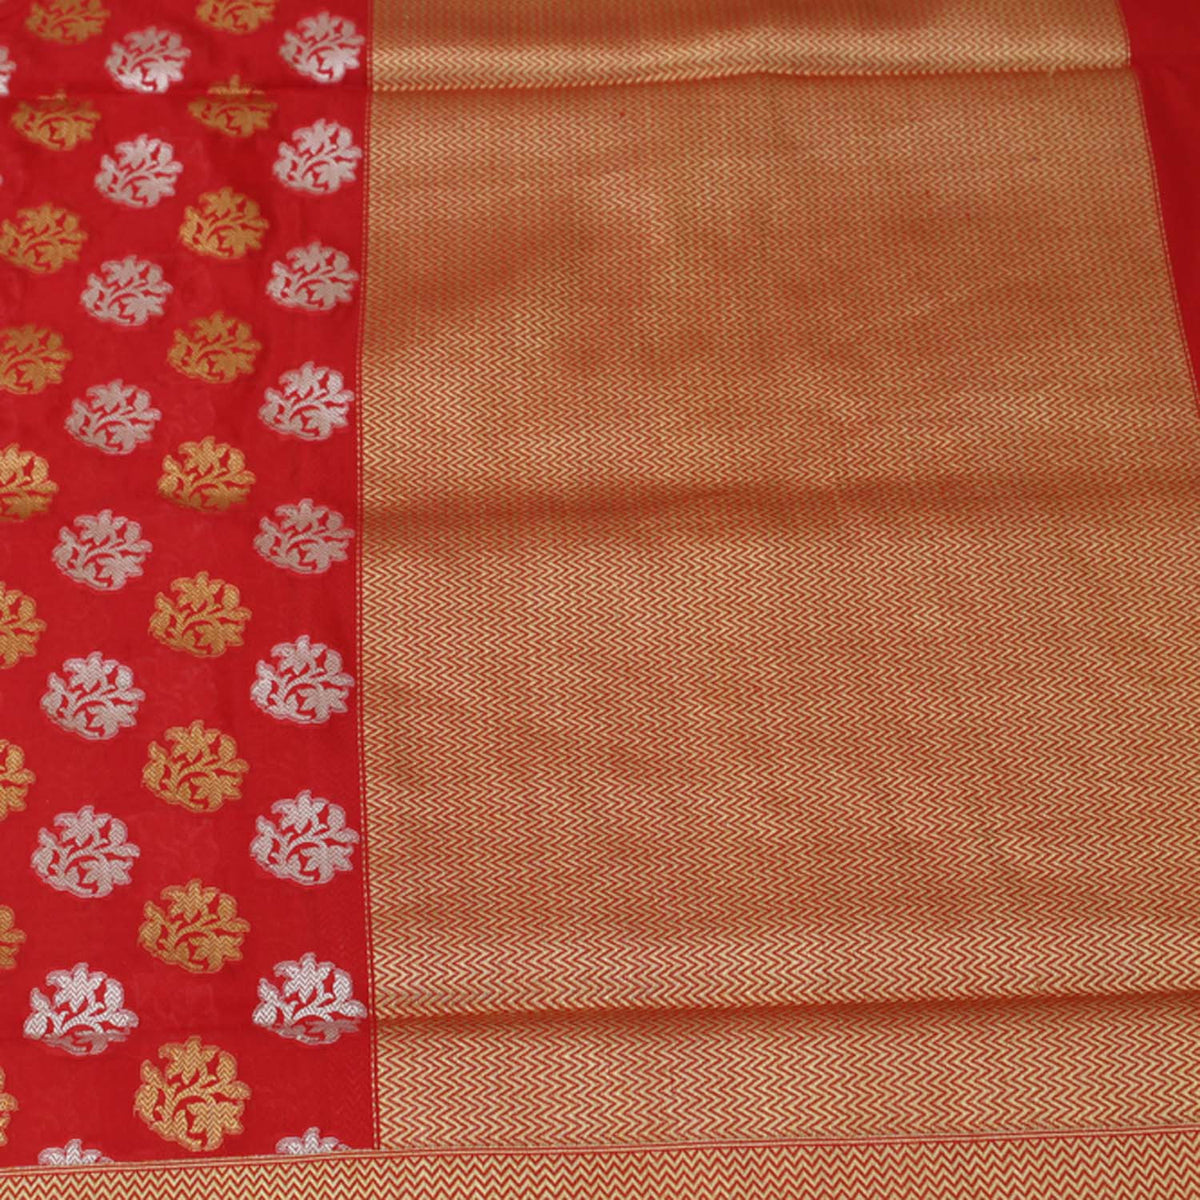 Red Pure Katan Silk Banarasi Handloom Saree - Tilfi - 2